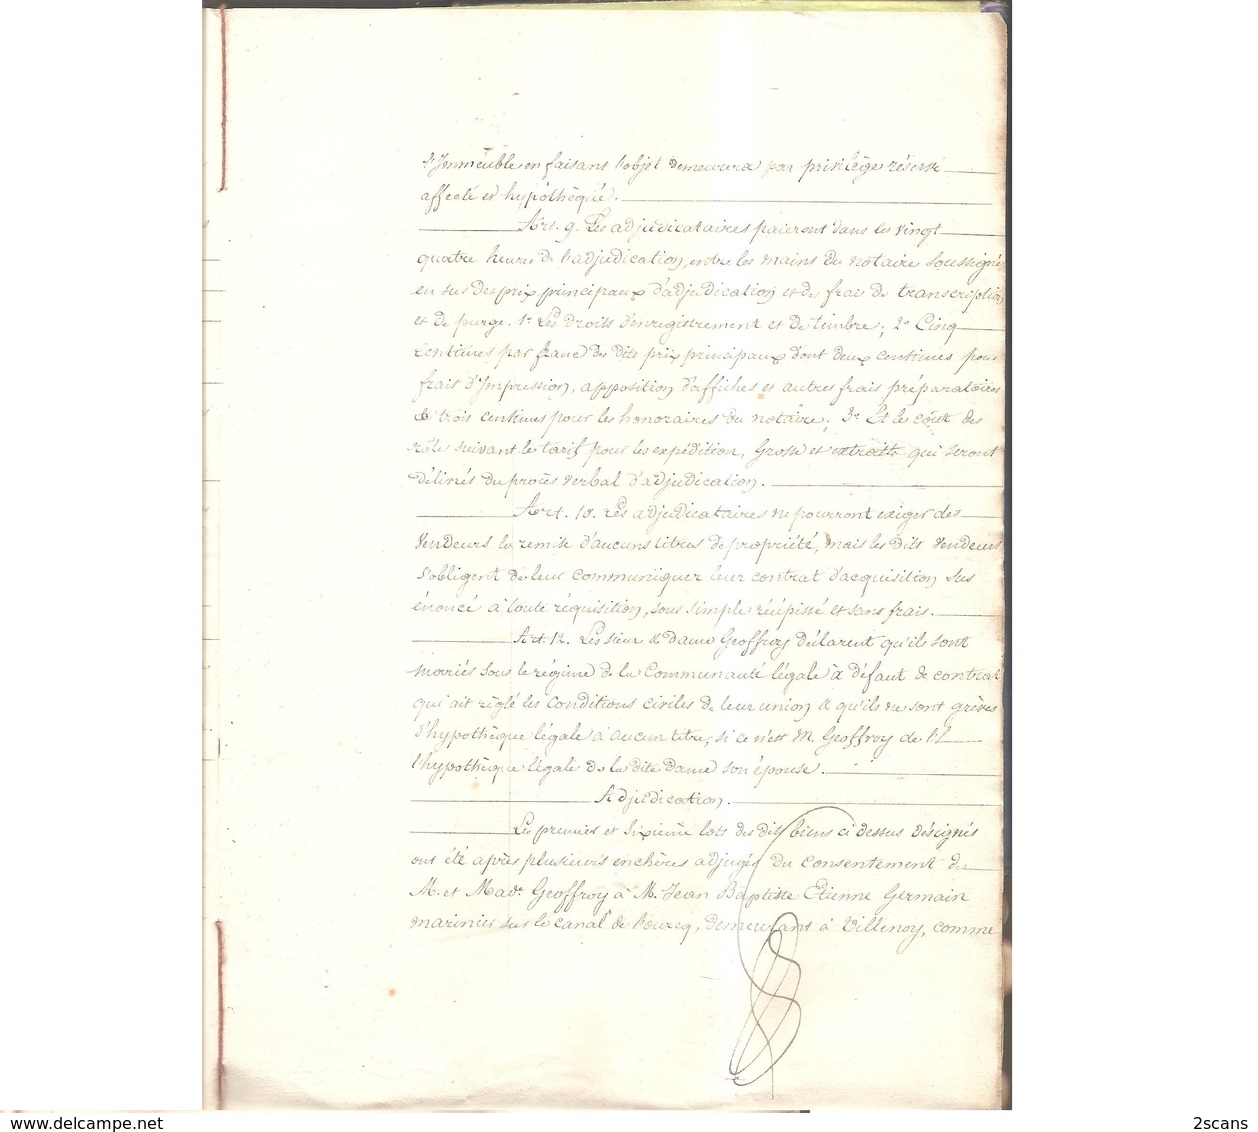 77 - VILLENOY - 1843 - Adjudication à la requête des sieur et dame GEOFFROY (Me LUCY notaire à Meaux) - COLLINET GERMAIN